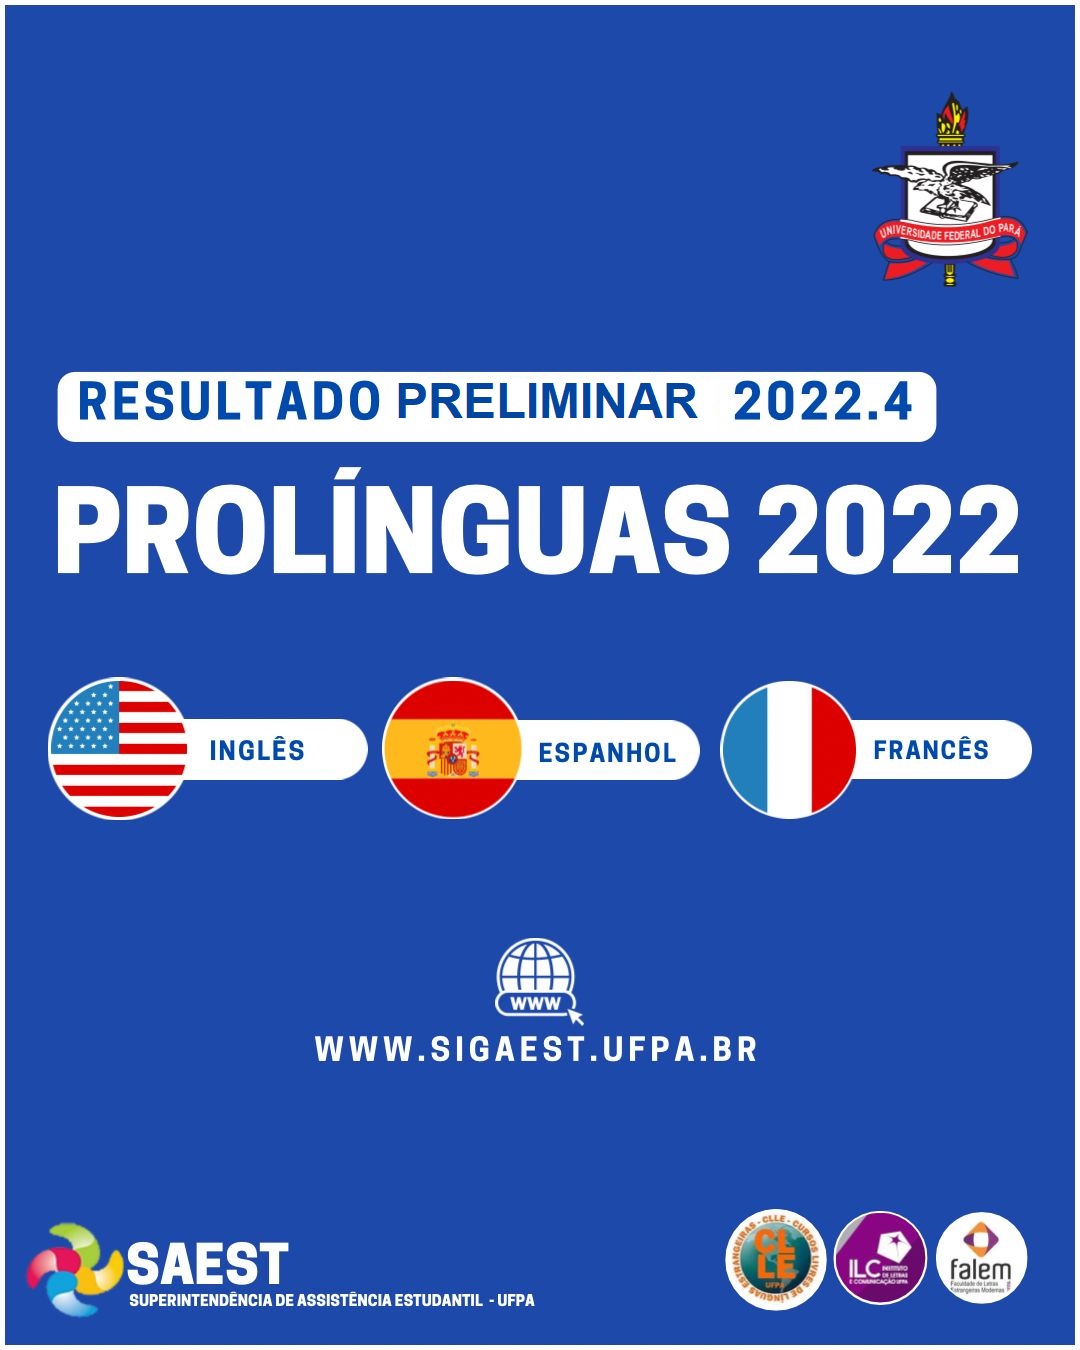 Sobre um fundo azul escuro, escrito em letras brancas: Pró-Línguas 2022, resultado PRELIMINAR 2022.4. Em cima o Brasão da UFPA. Em baixo as bandeiras dos Estados Unidos, da Espanha e da França.  Em baixo, o logo da Saest.